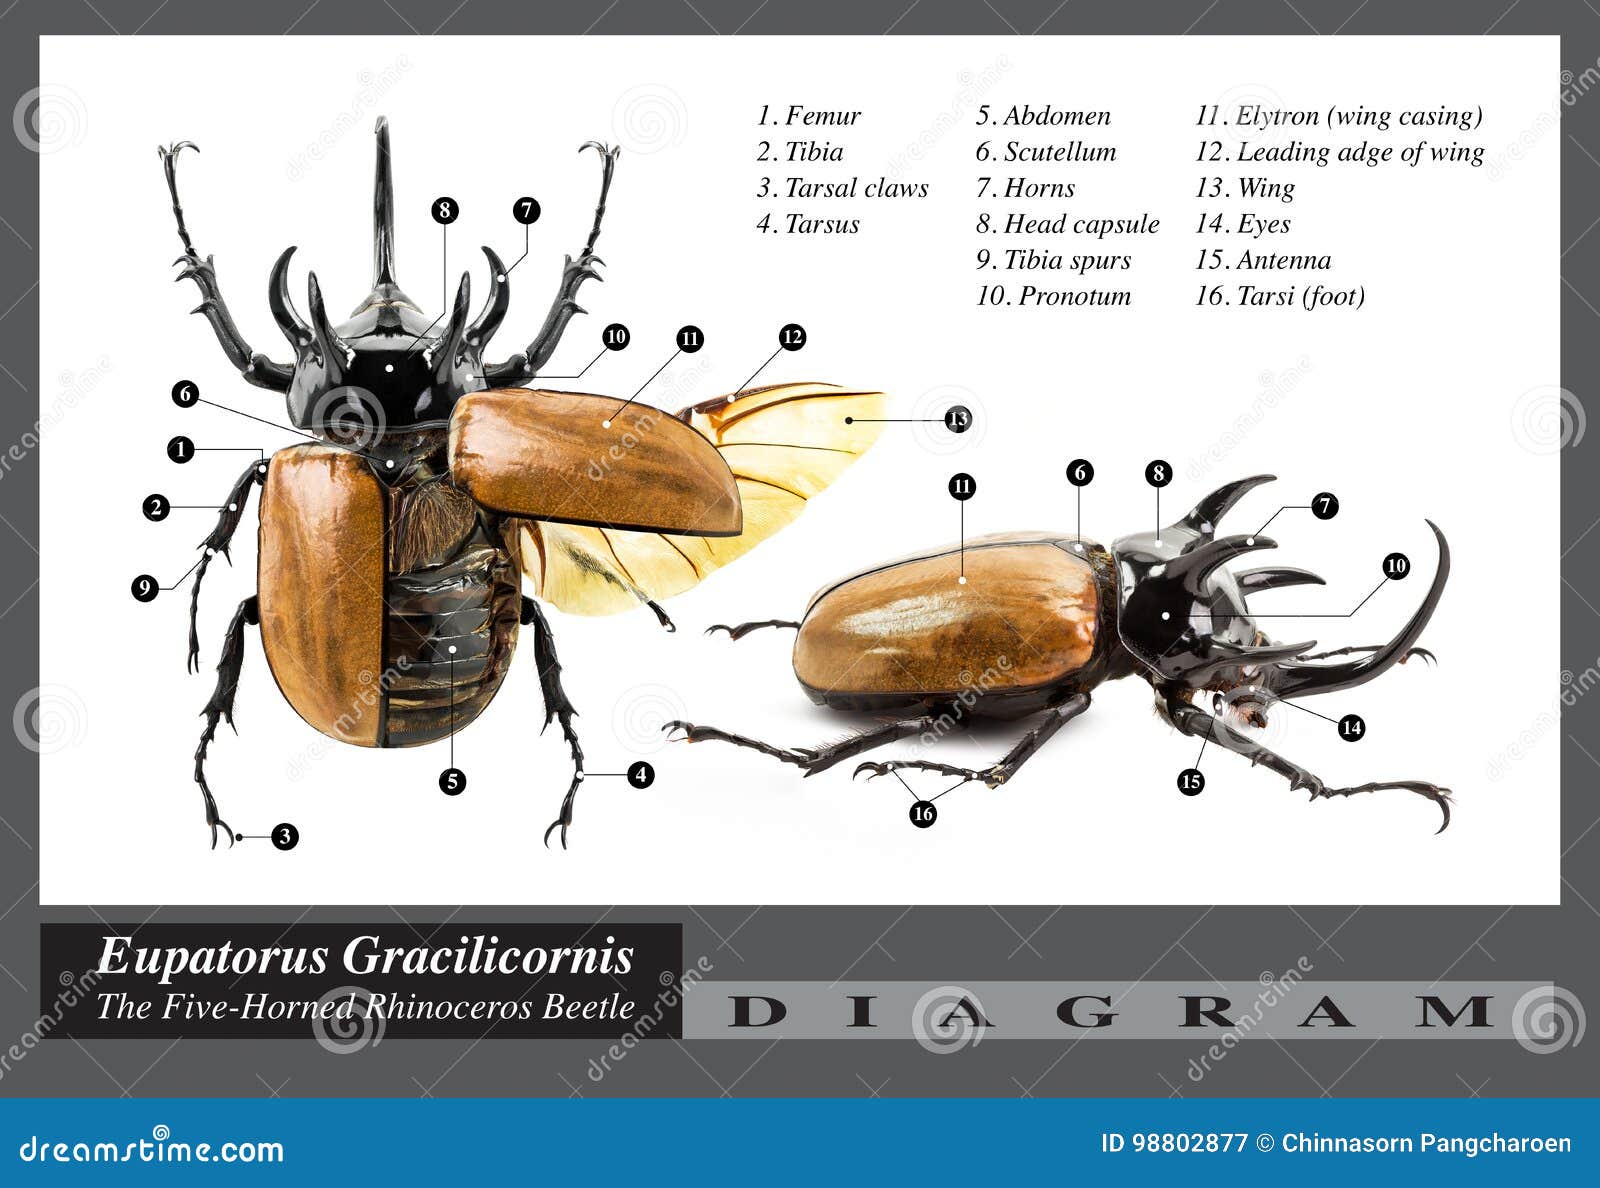 Eupatorus Gracilicornis Beetle - côn trùng Eupatorus Gracilicornis là một loài bọ cánh cứng cực kỳ thú vị và đẹp mắt. Với họa tiết chấm bi trắng đen và số chân phát sáng, chúng sẽ khiến bạn thích thú. Cùng xem những bức ảnh thú vị về loài bọ này nhé.